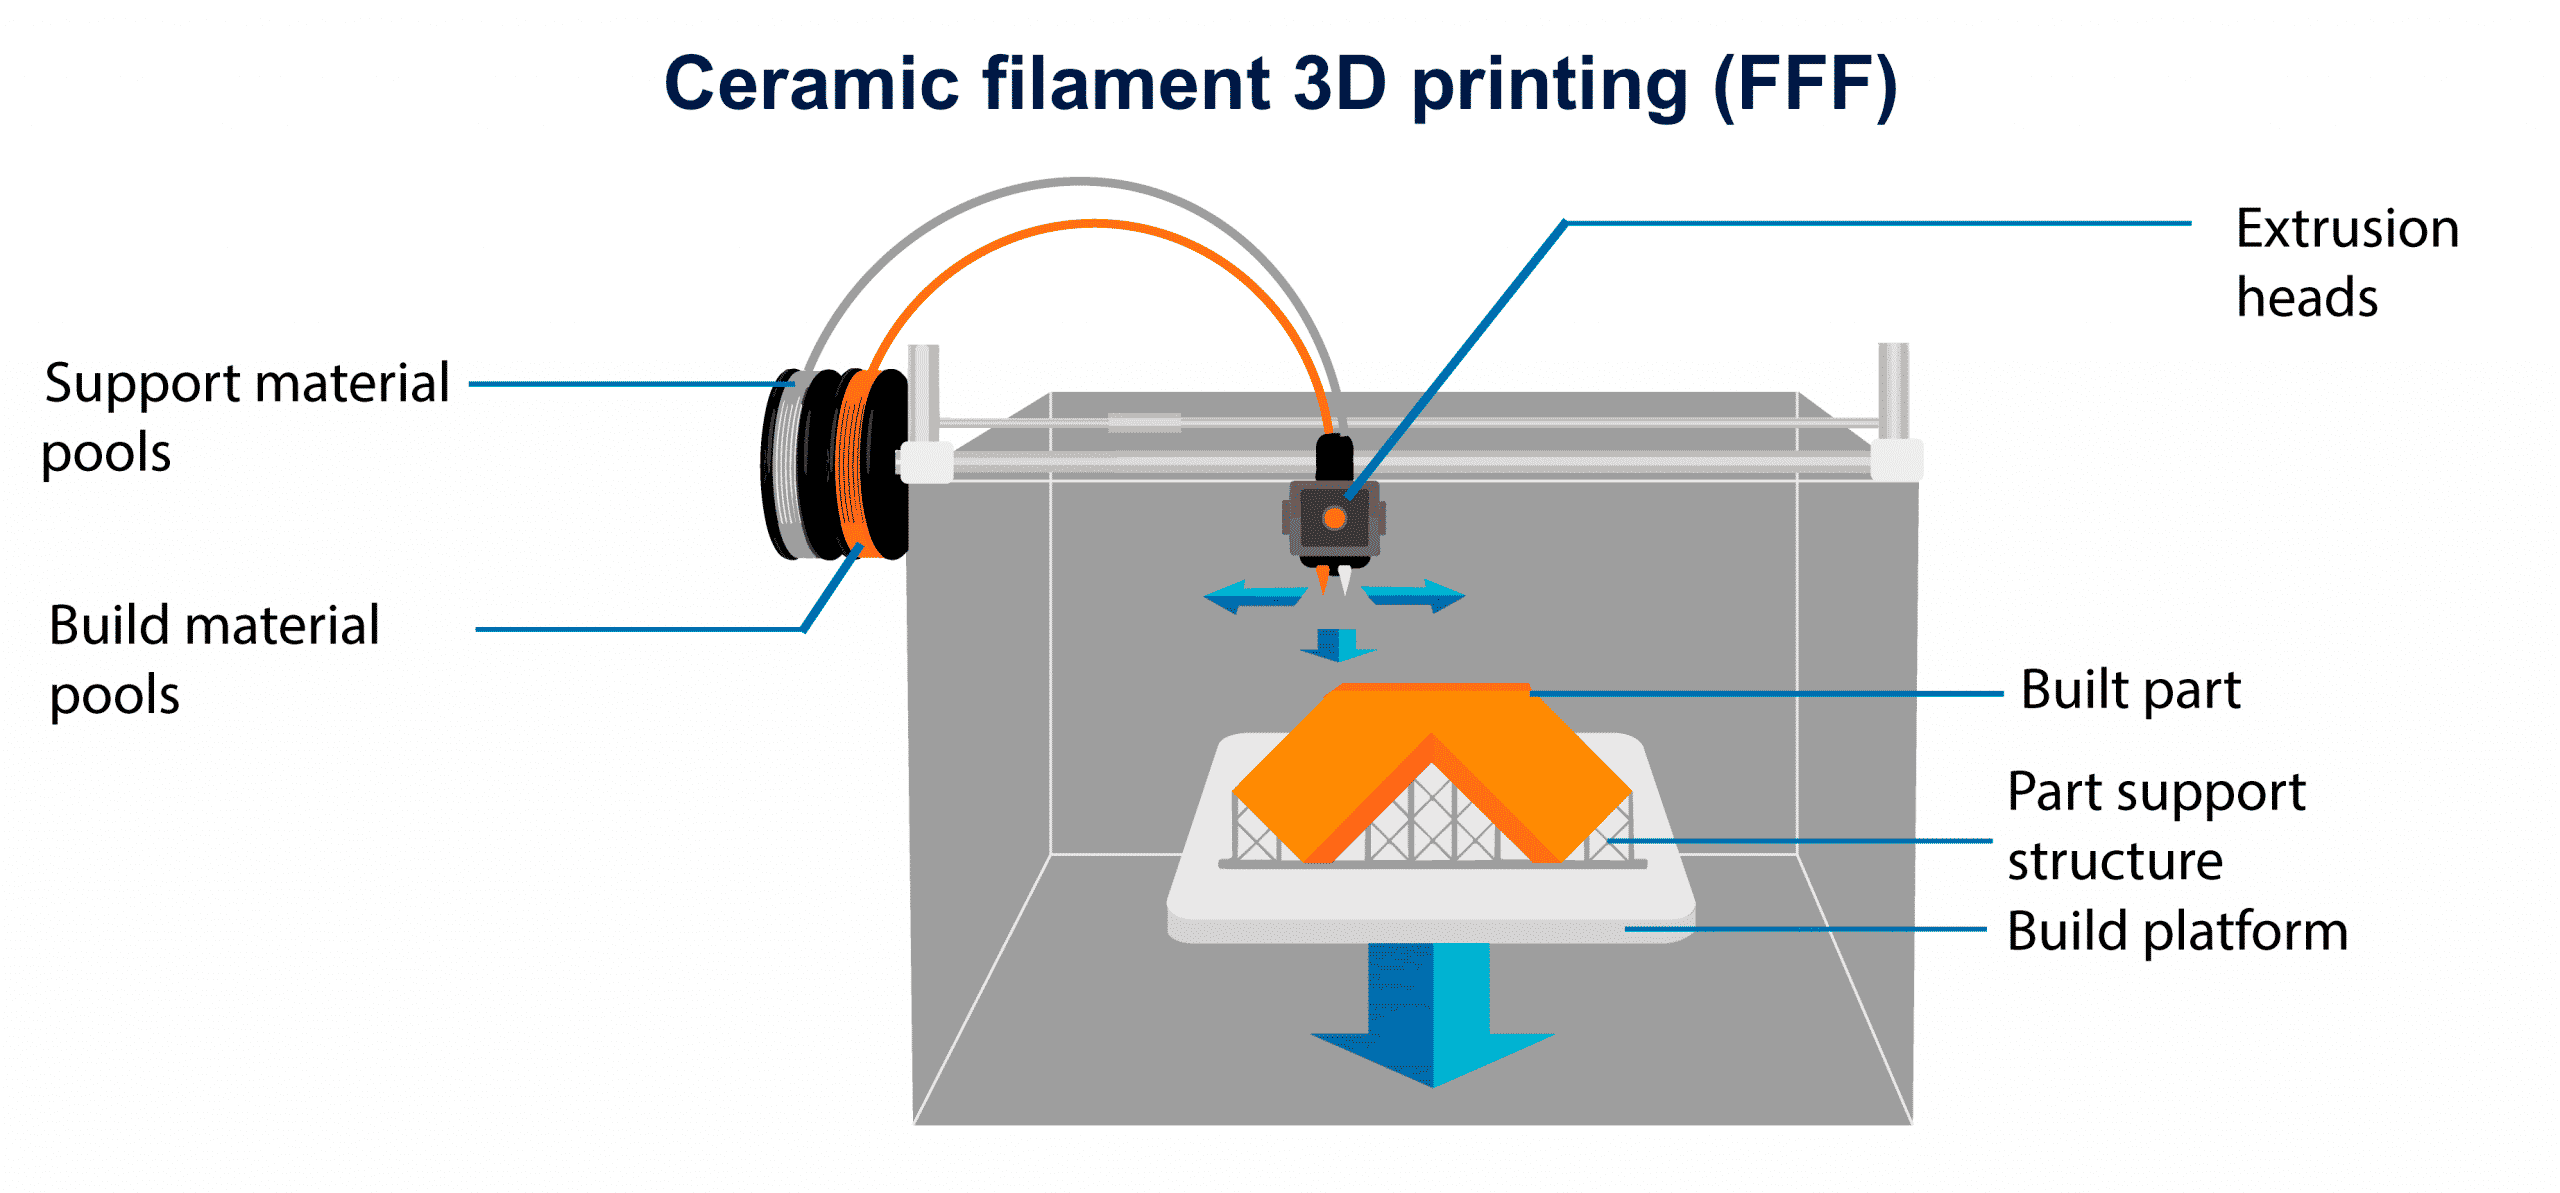 Impresión 3D de filamento cerámico FFF